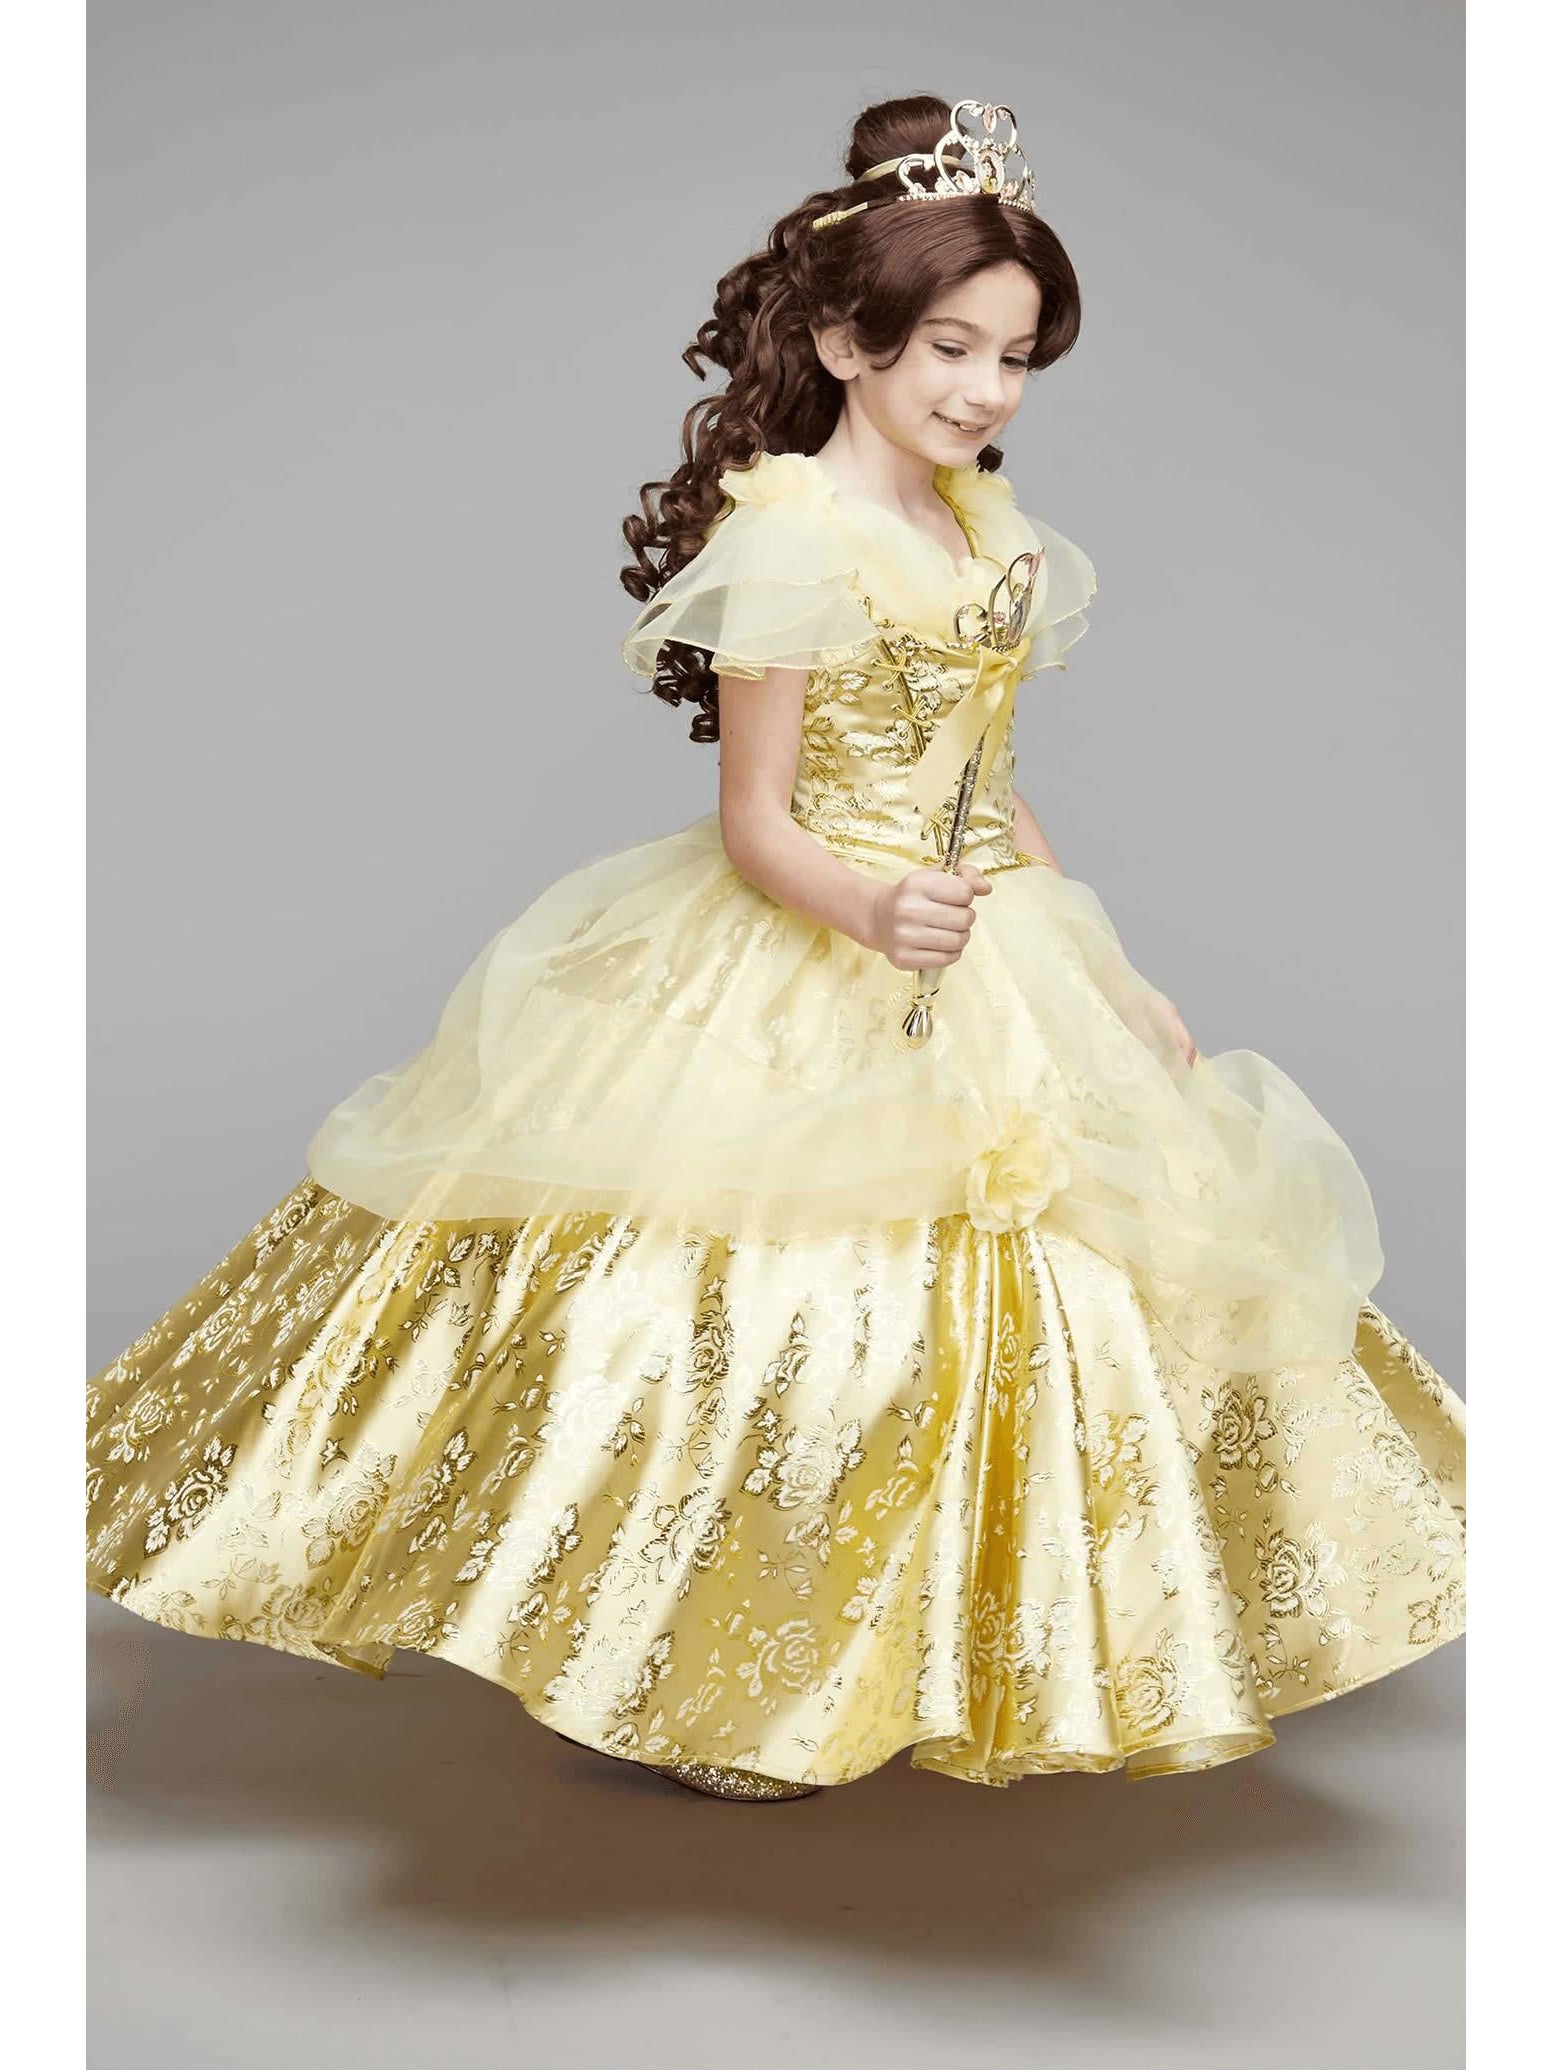 belle dress for kids